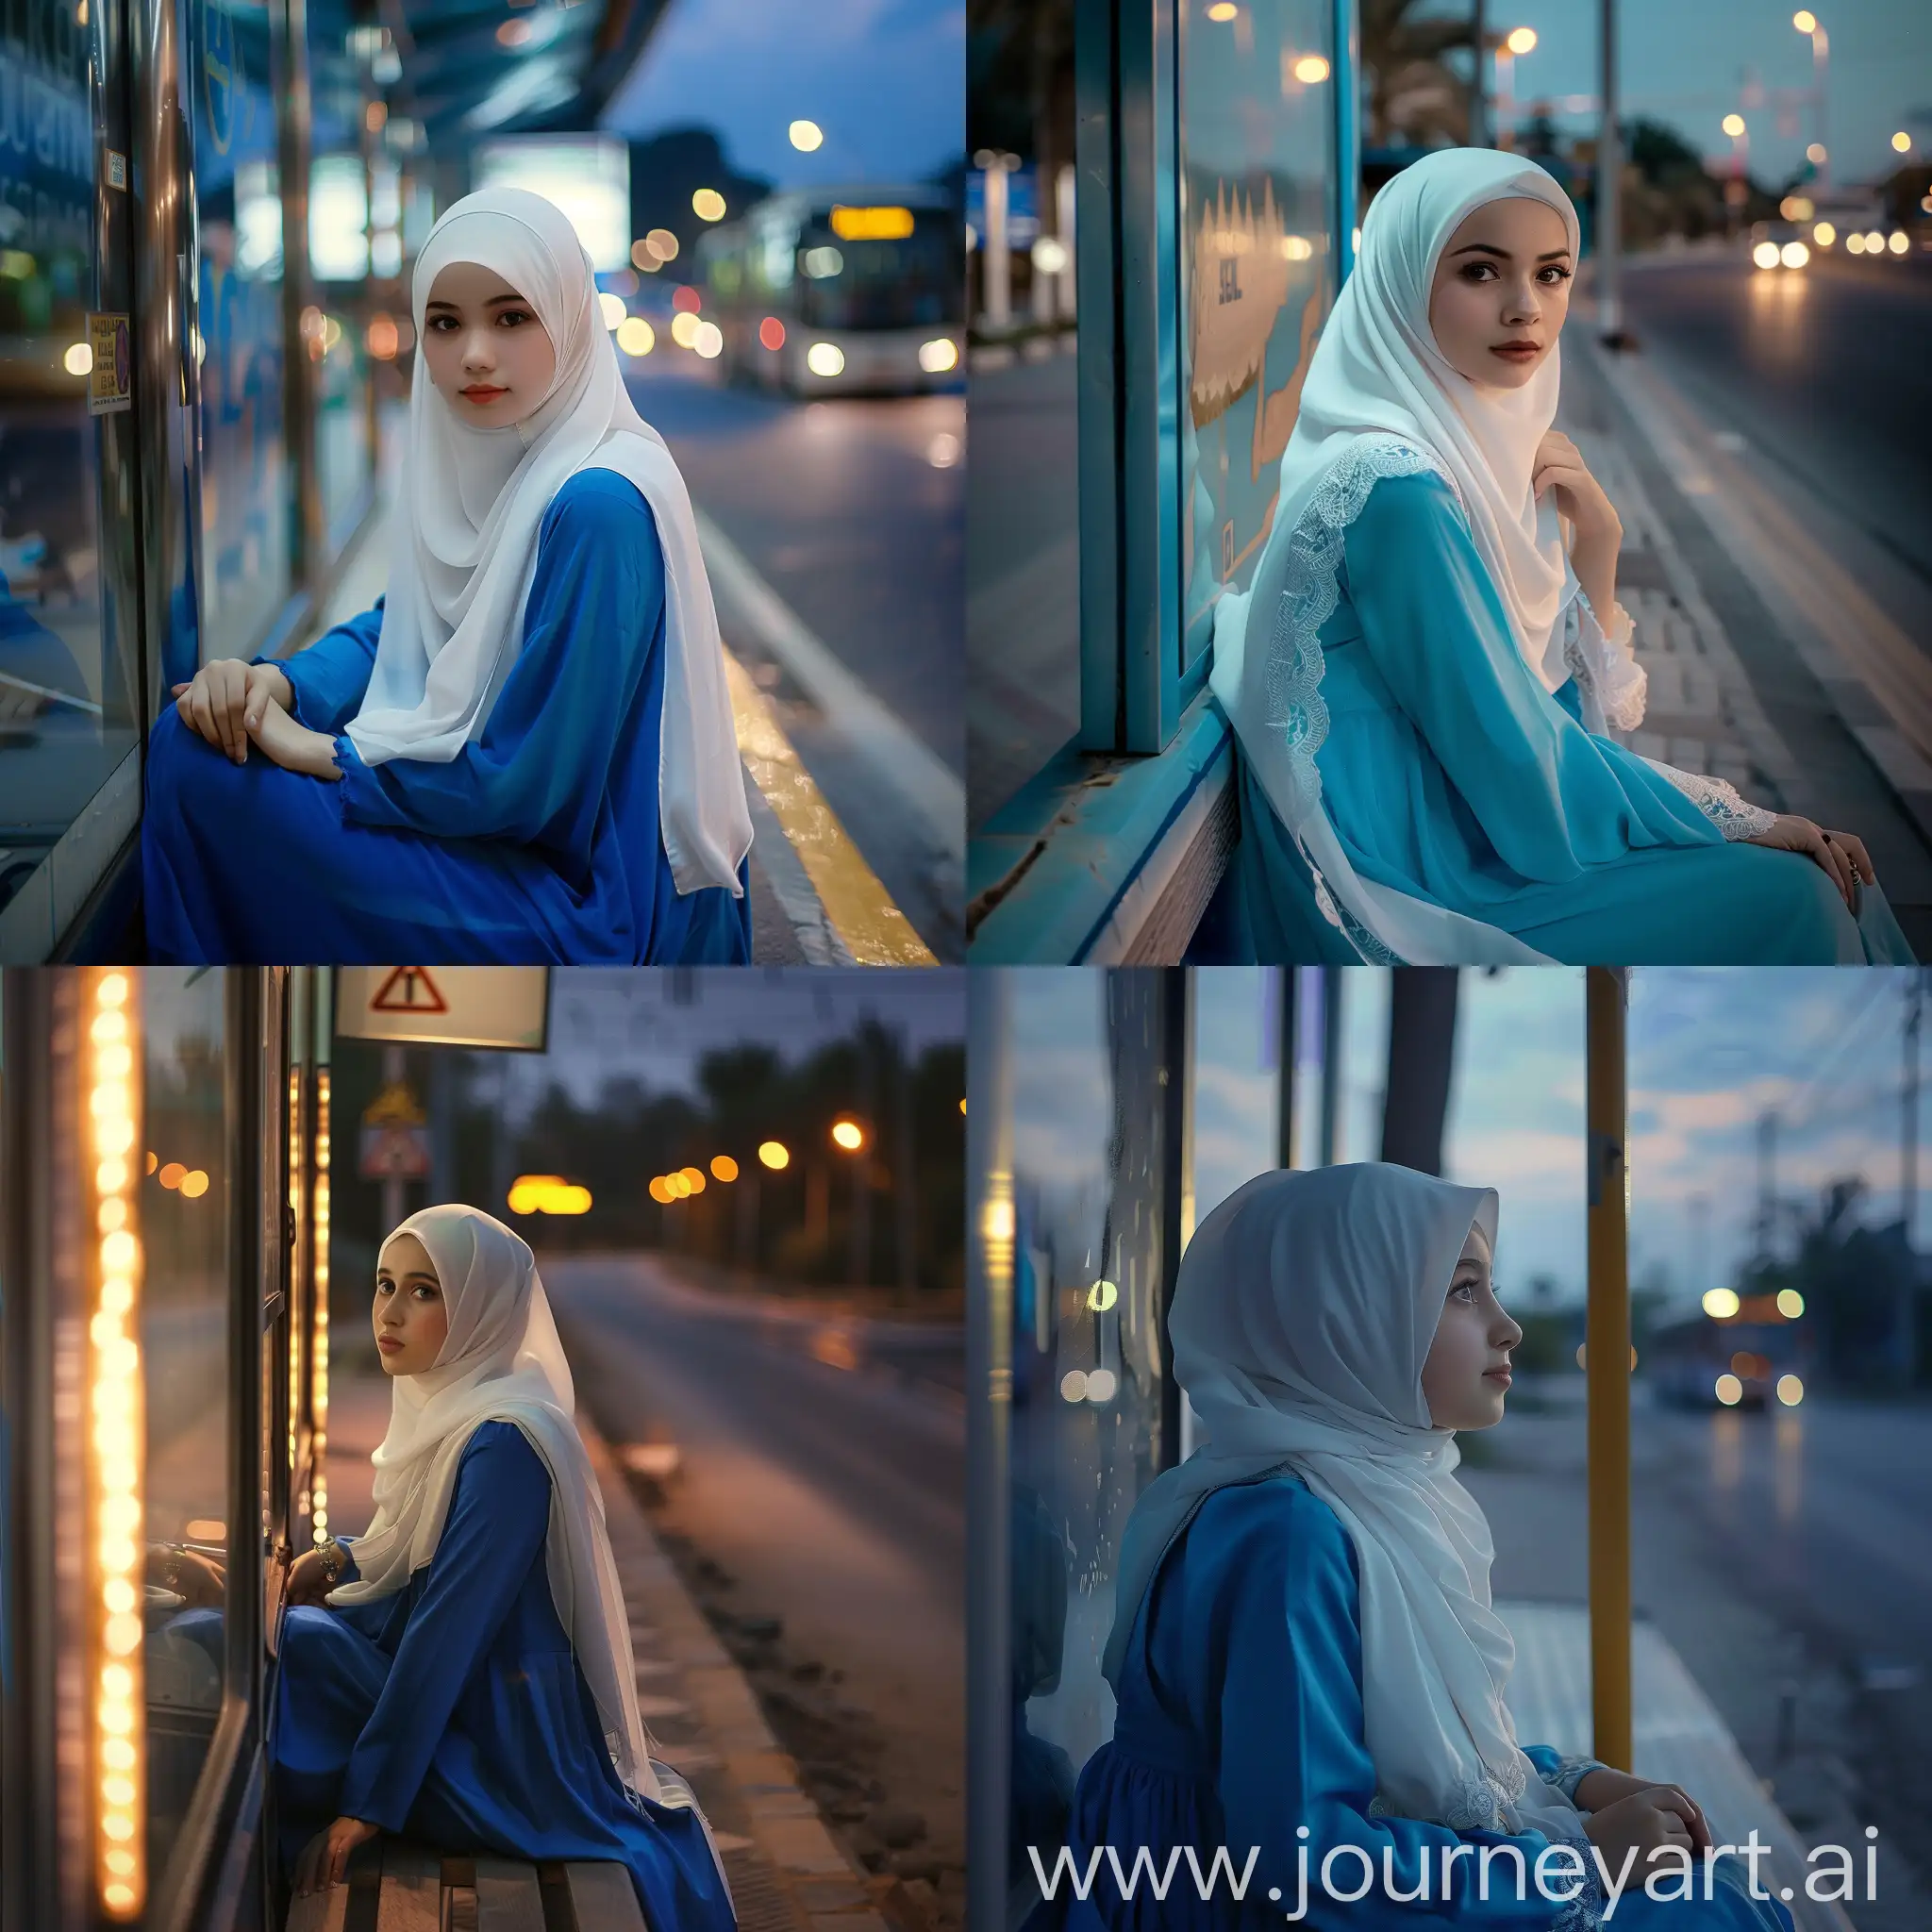 Gadis cantik berjilbab putih,pakai baju biru,duduk di halte bus,suasana malam hari